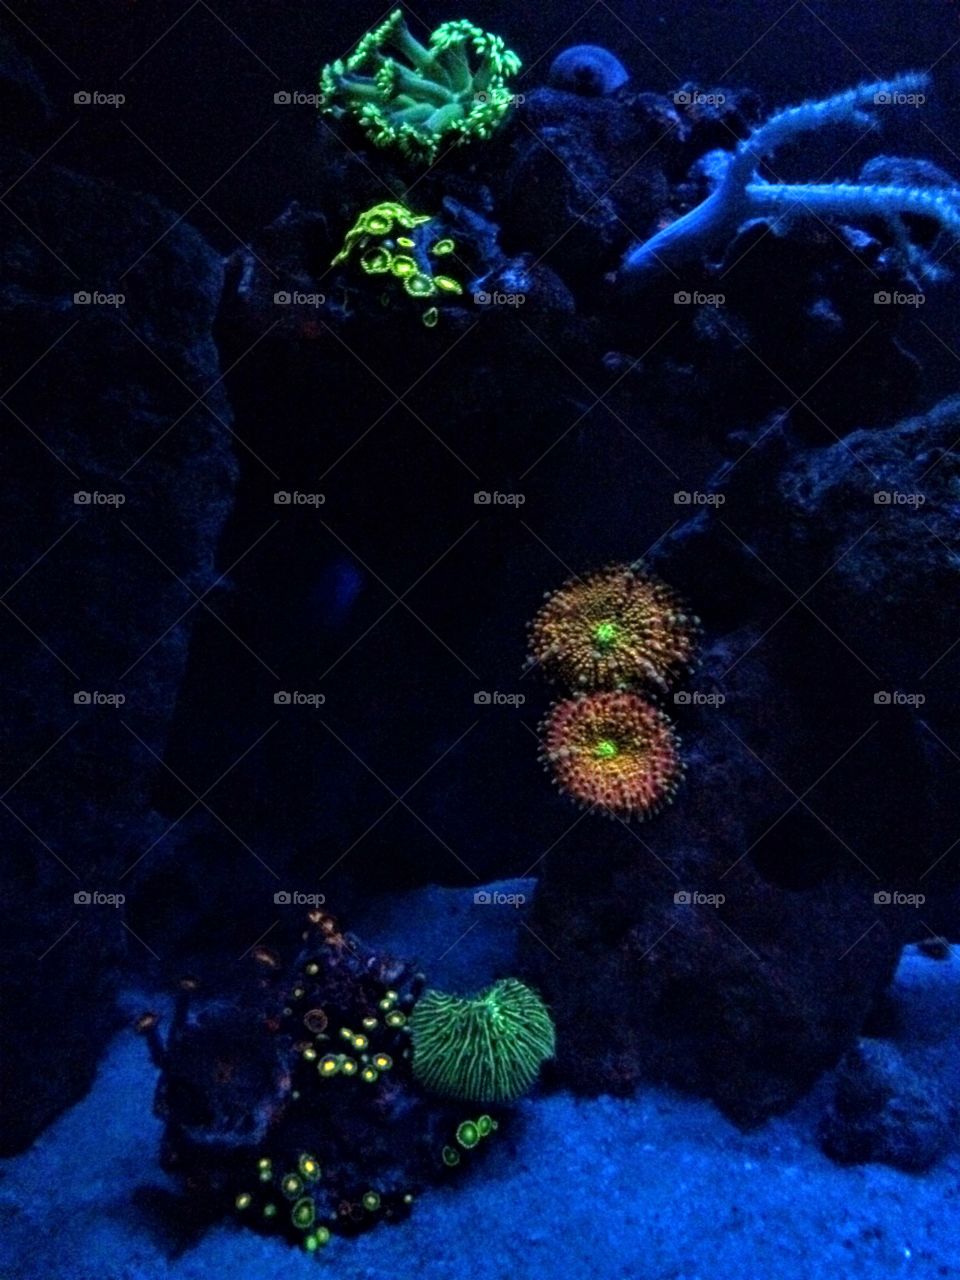 Reef tank at night 